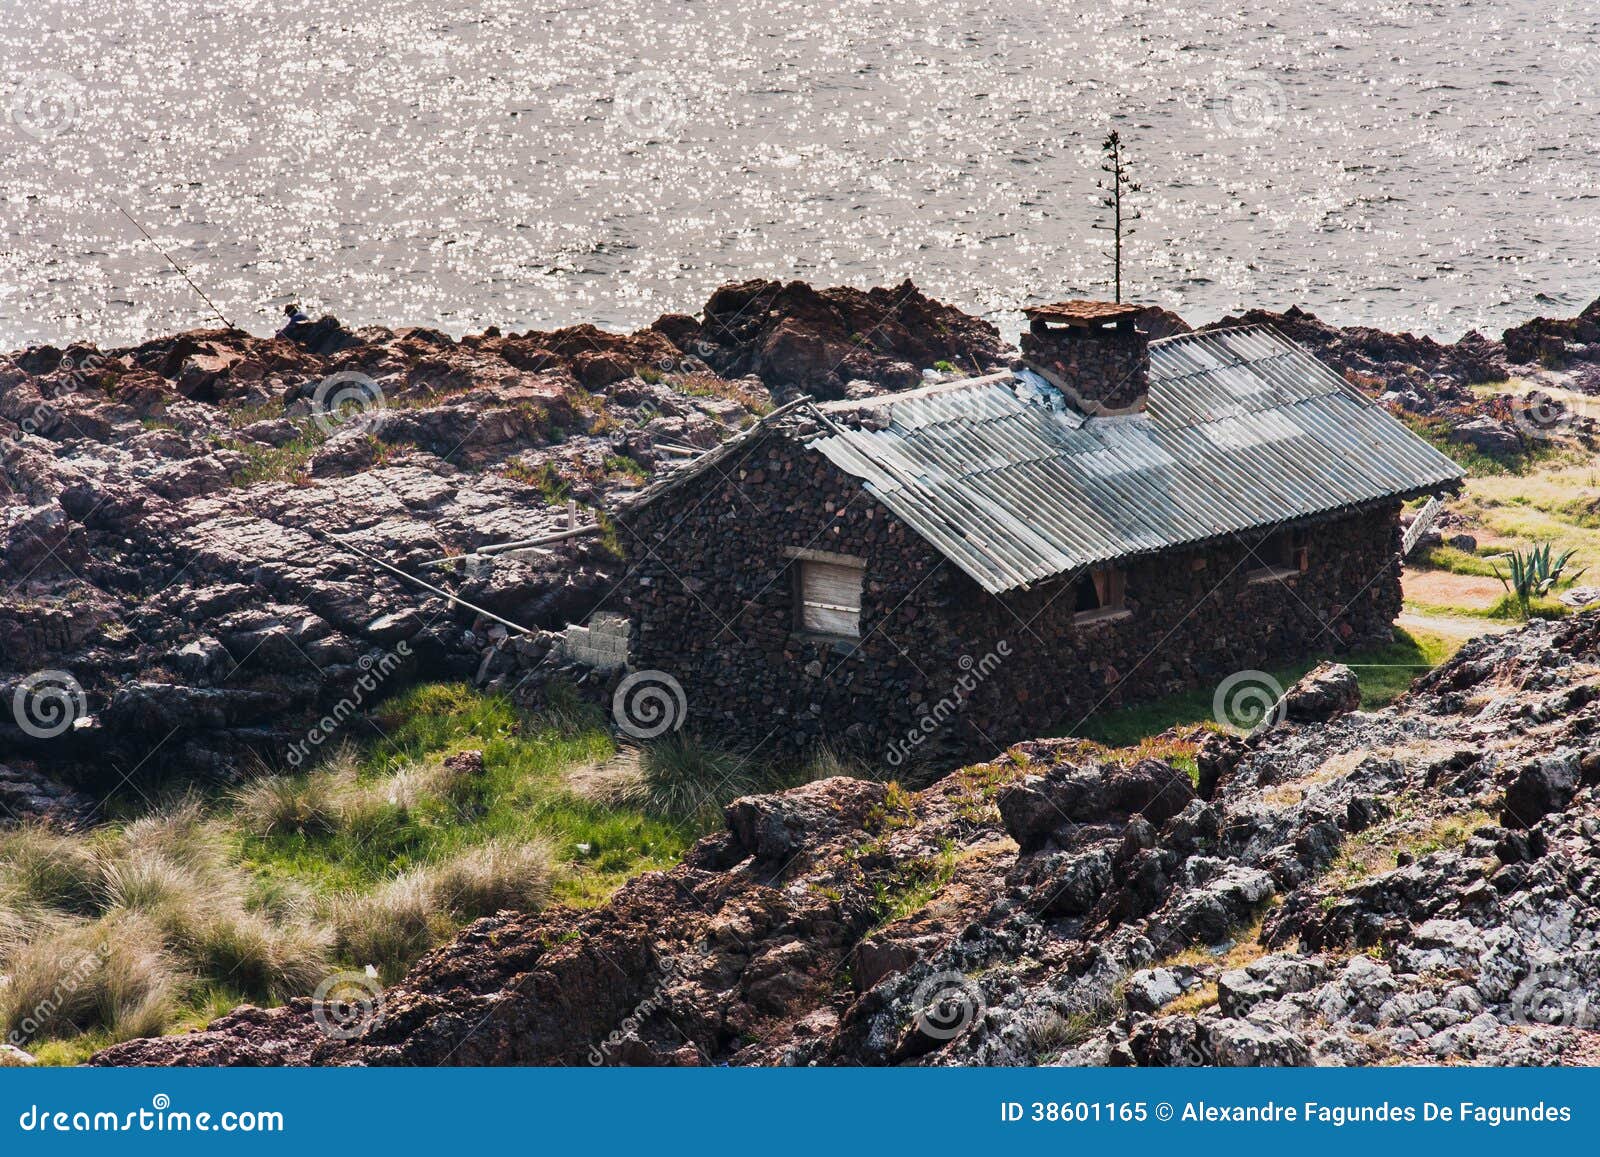 punta ballena stone house